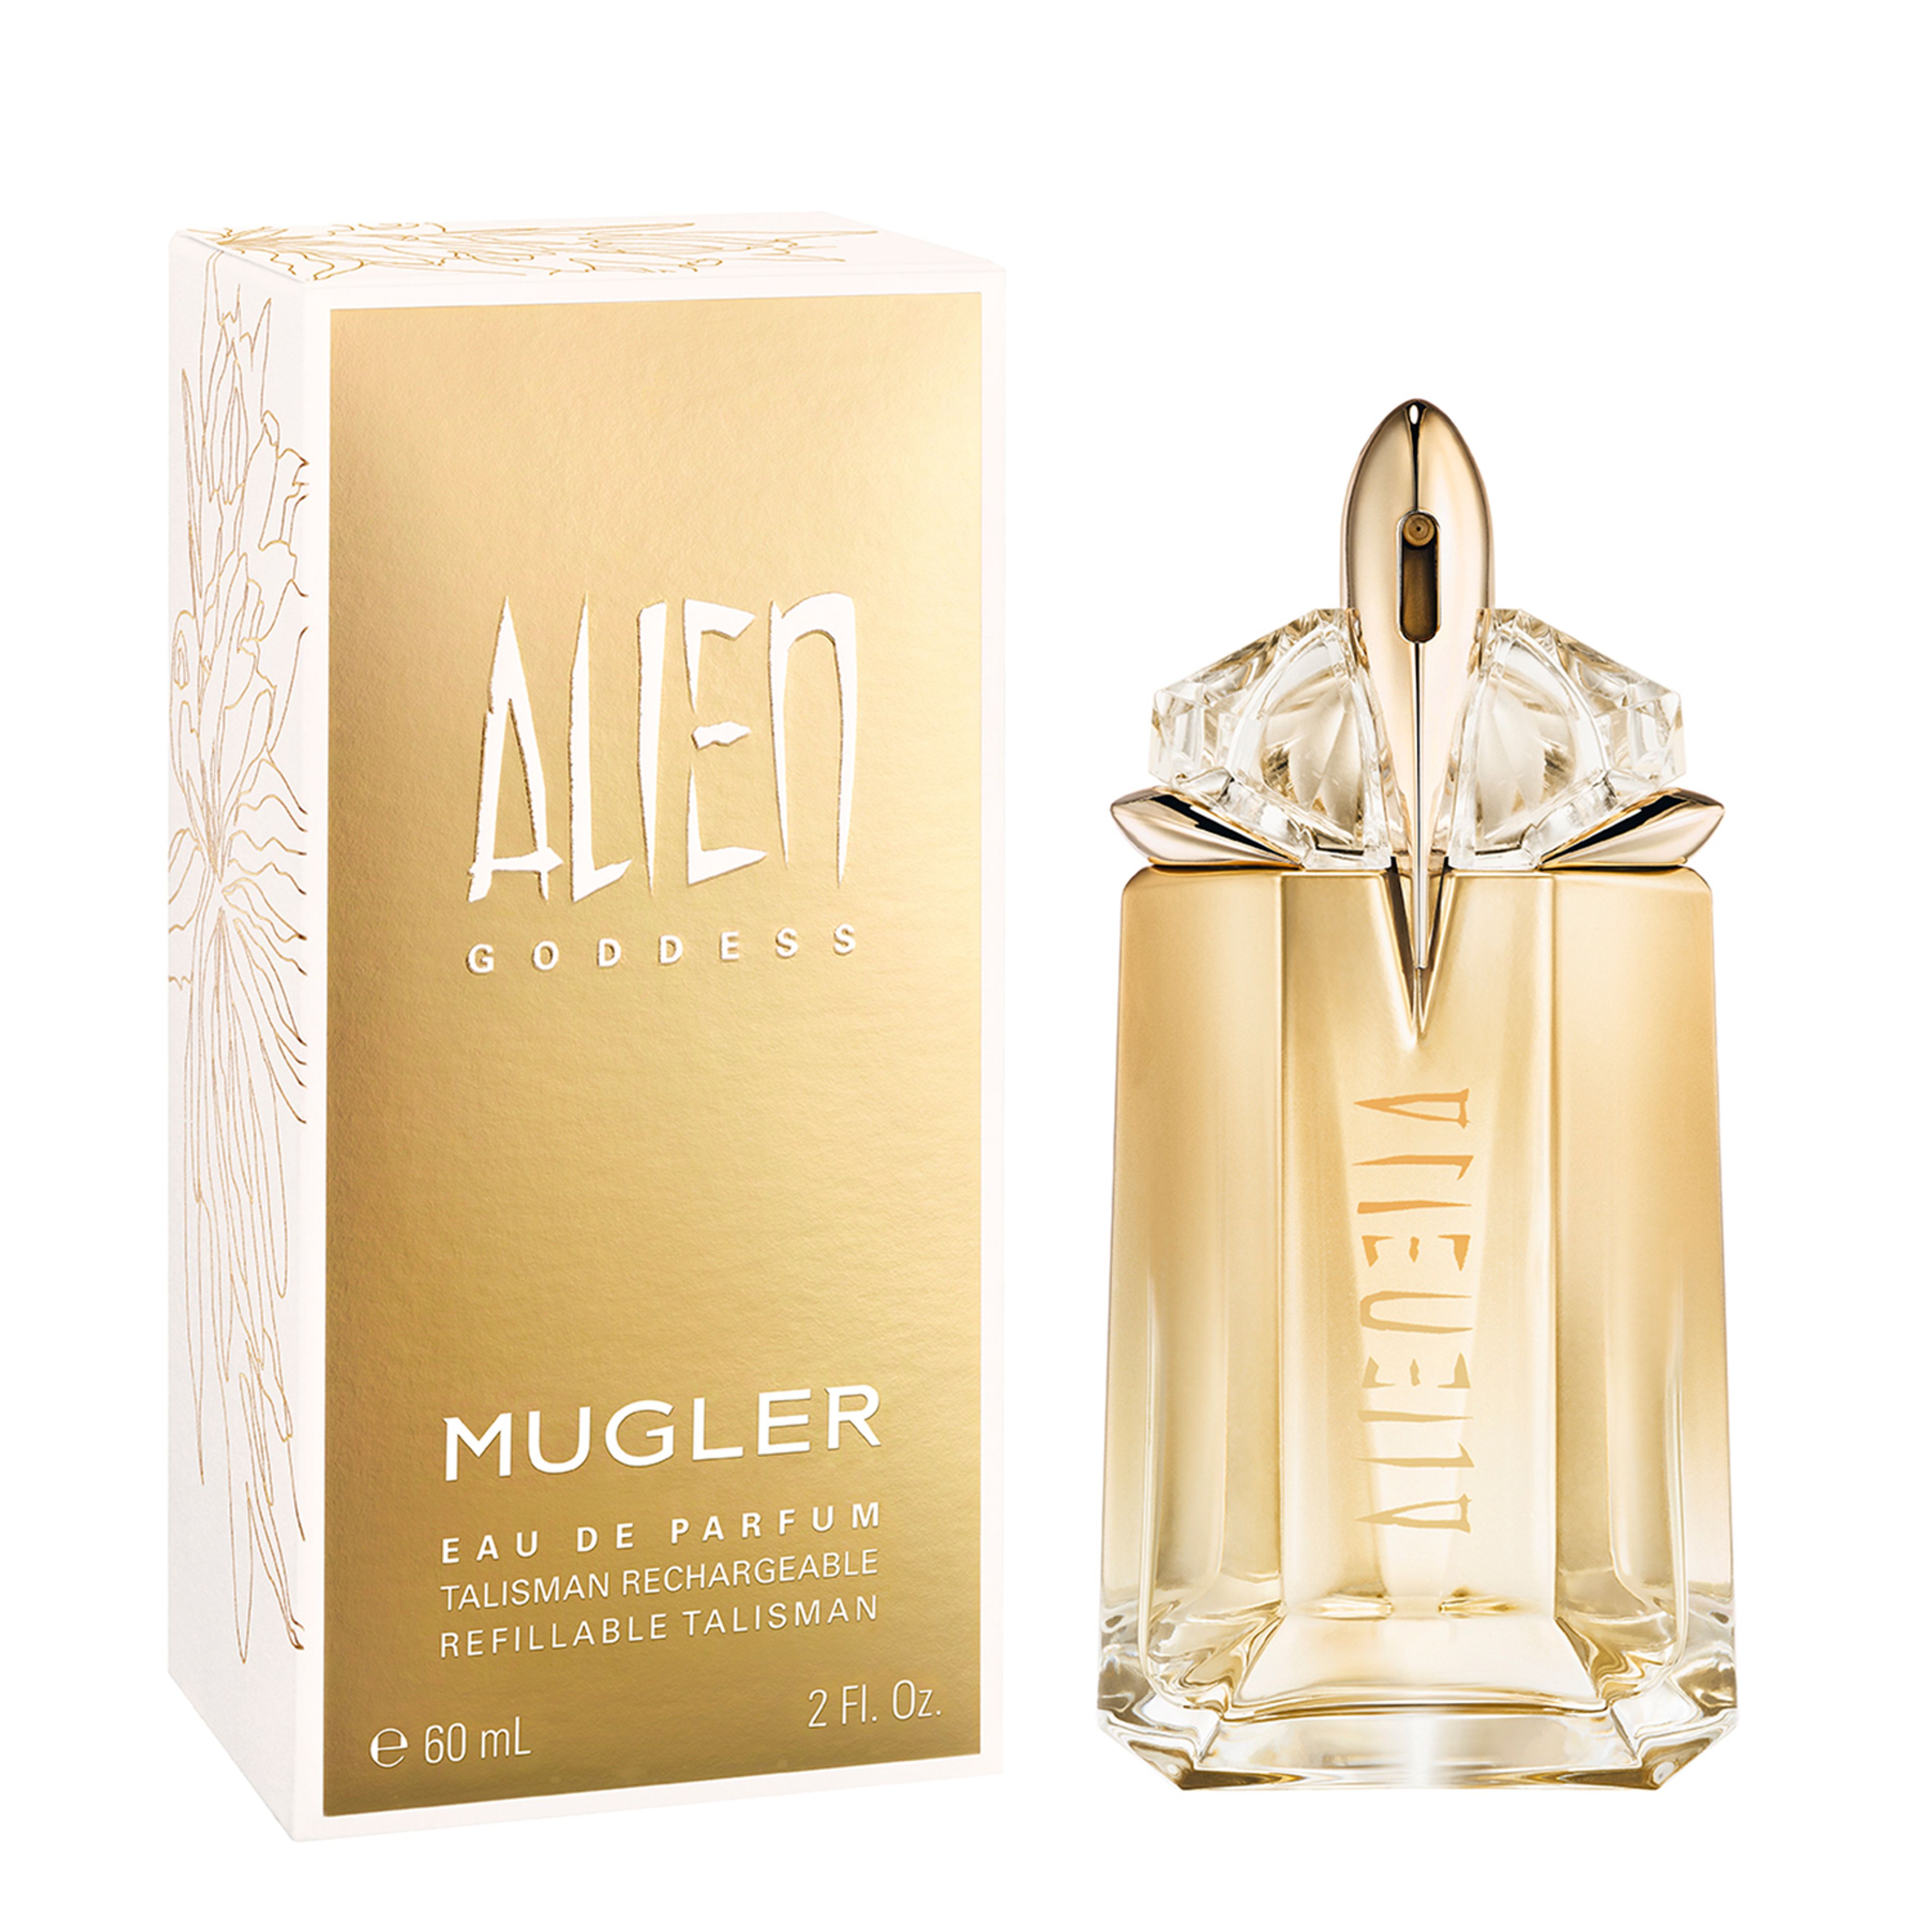 Mugler Alien Goddess Eau De Parfum 2